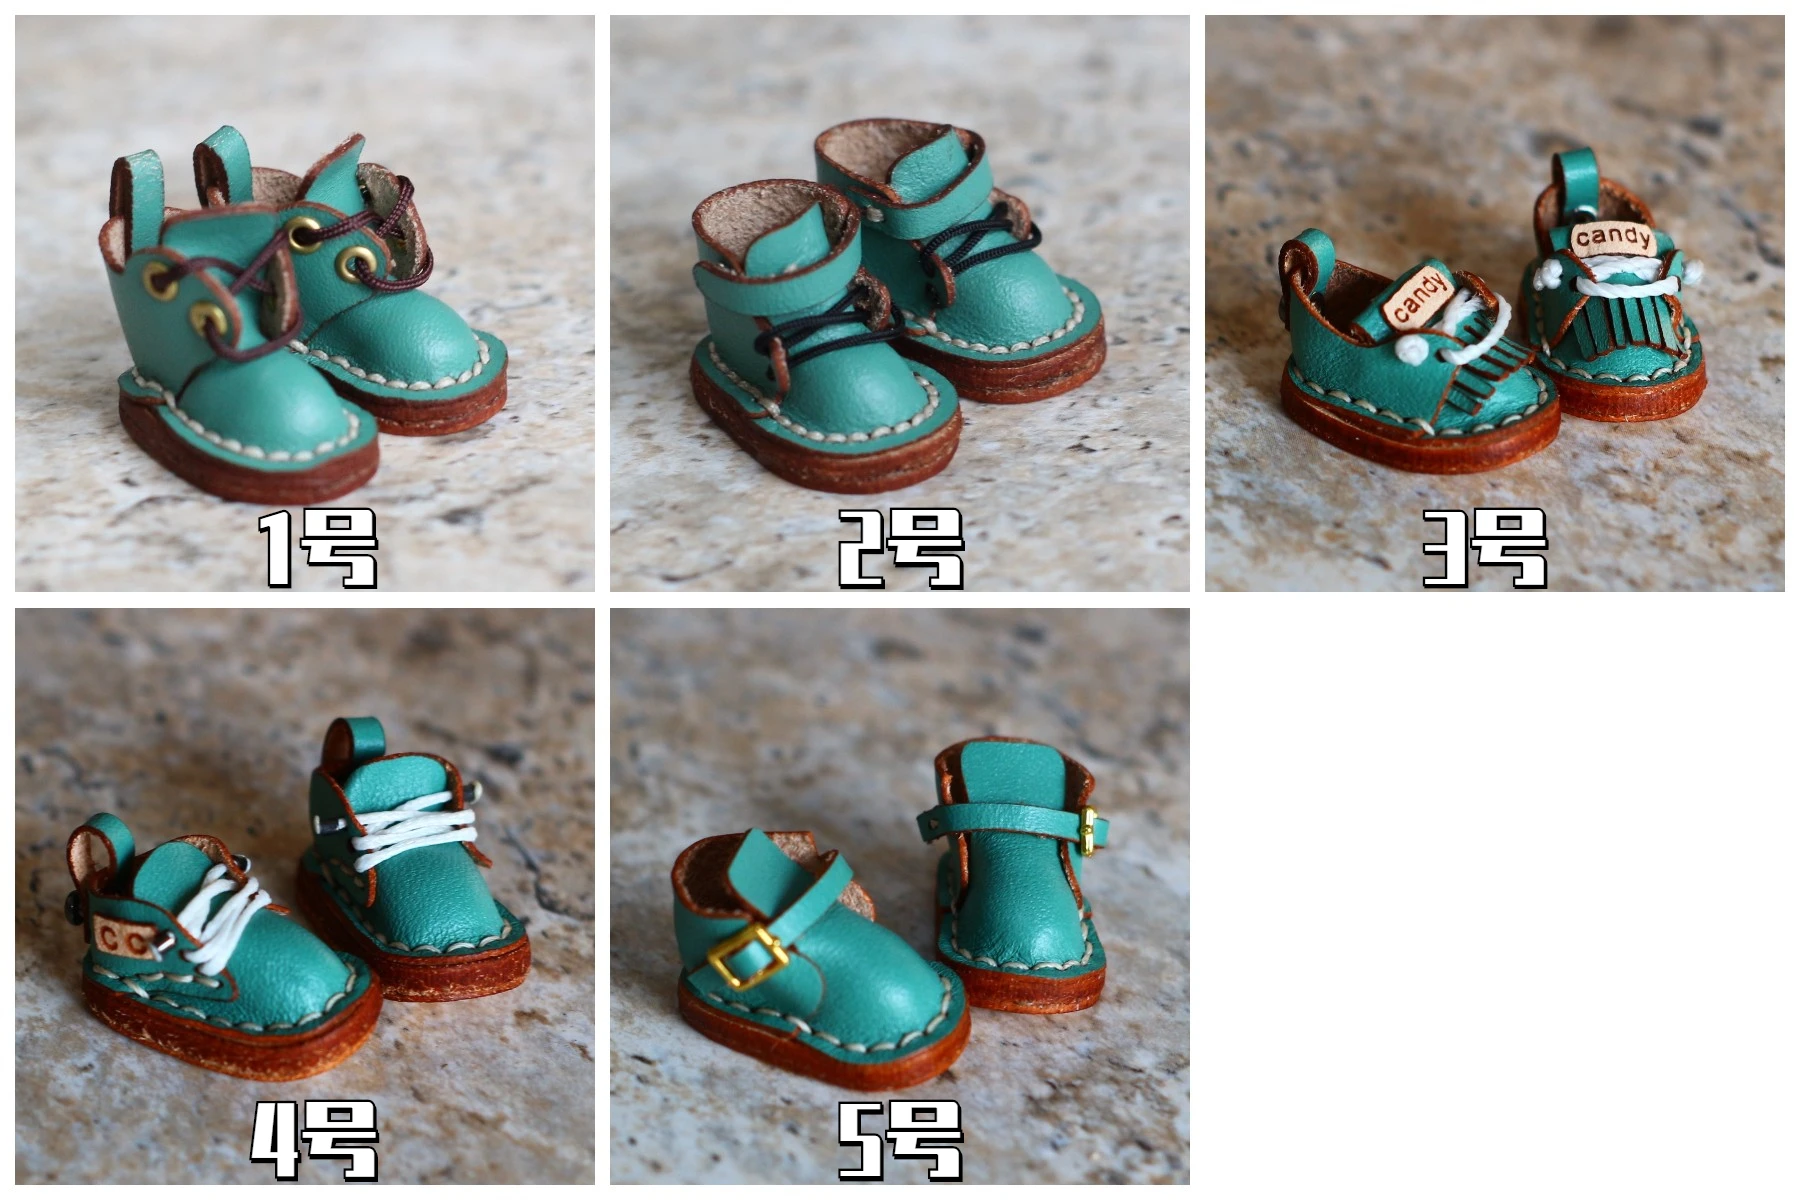 [STODOLL] детски обувки ob11 12 точки ботуши ръчно изработени обувки Martin vinyl обувки обувки за кукли ob11